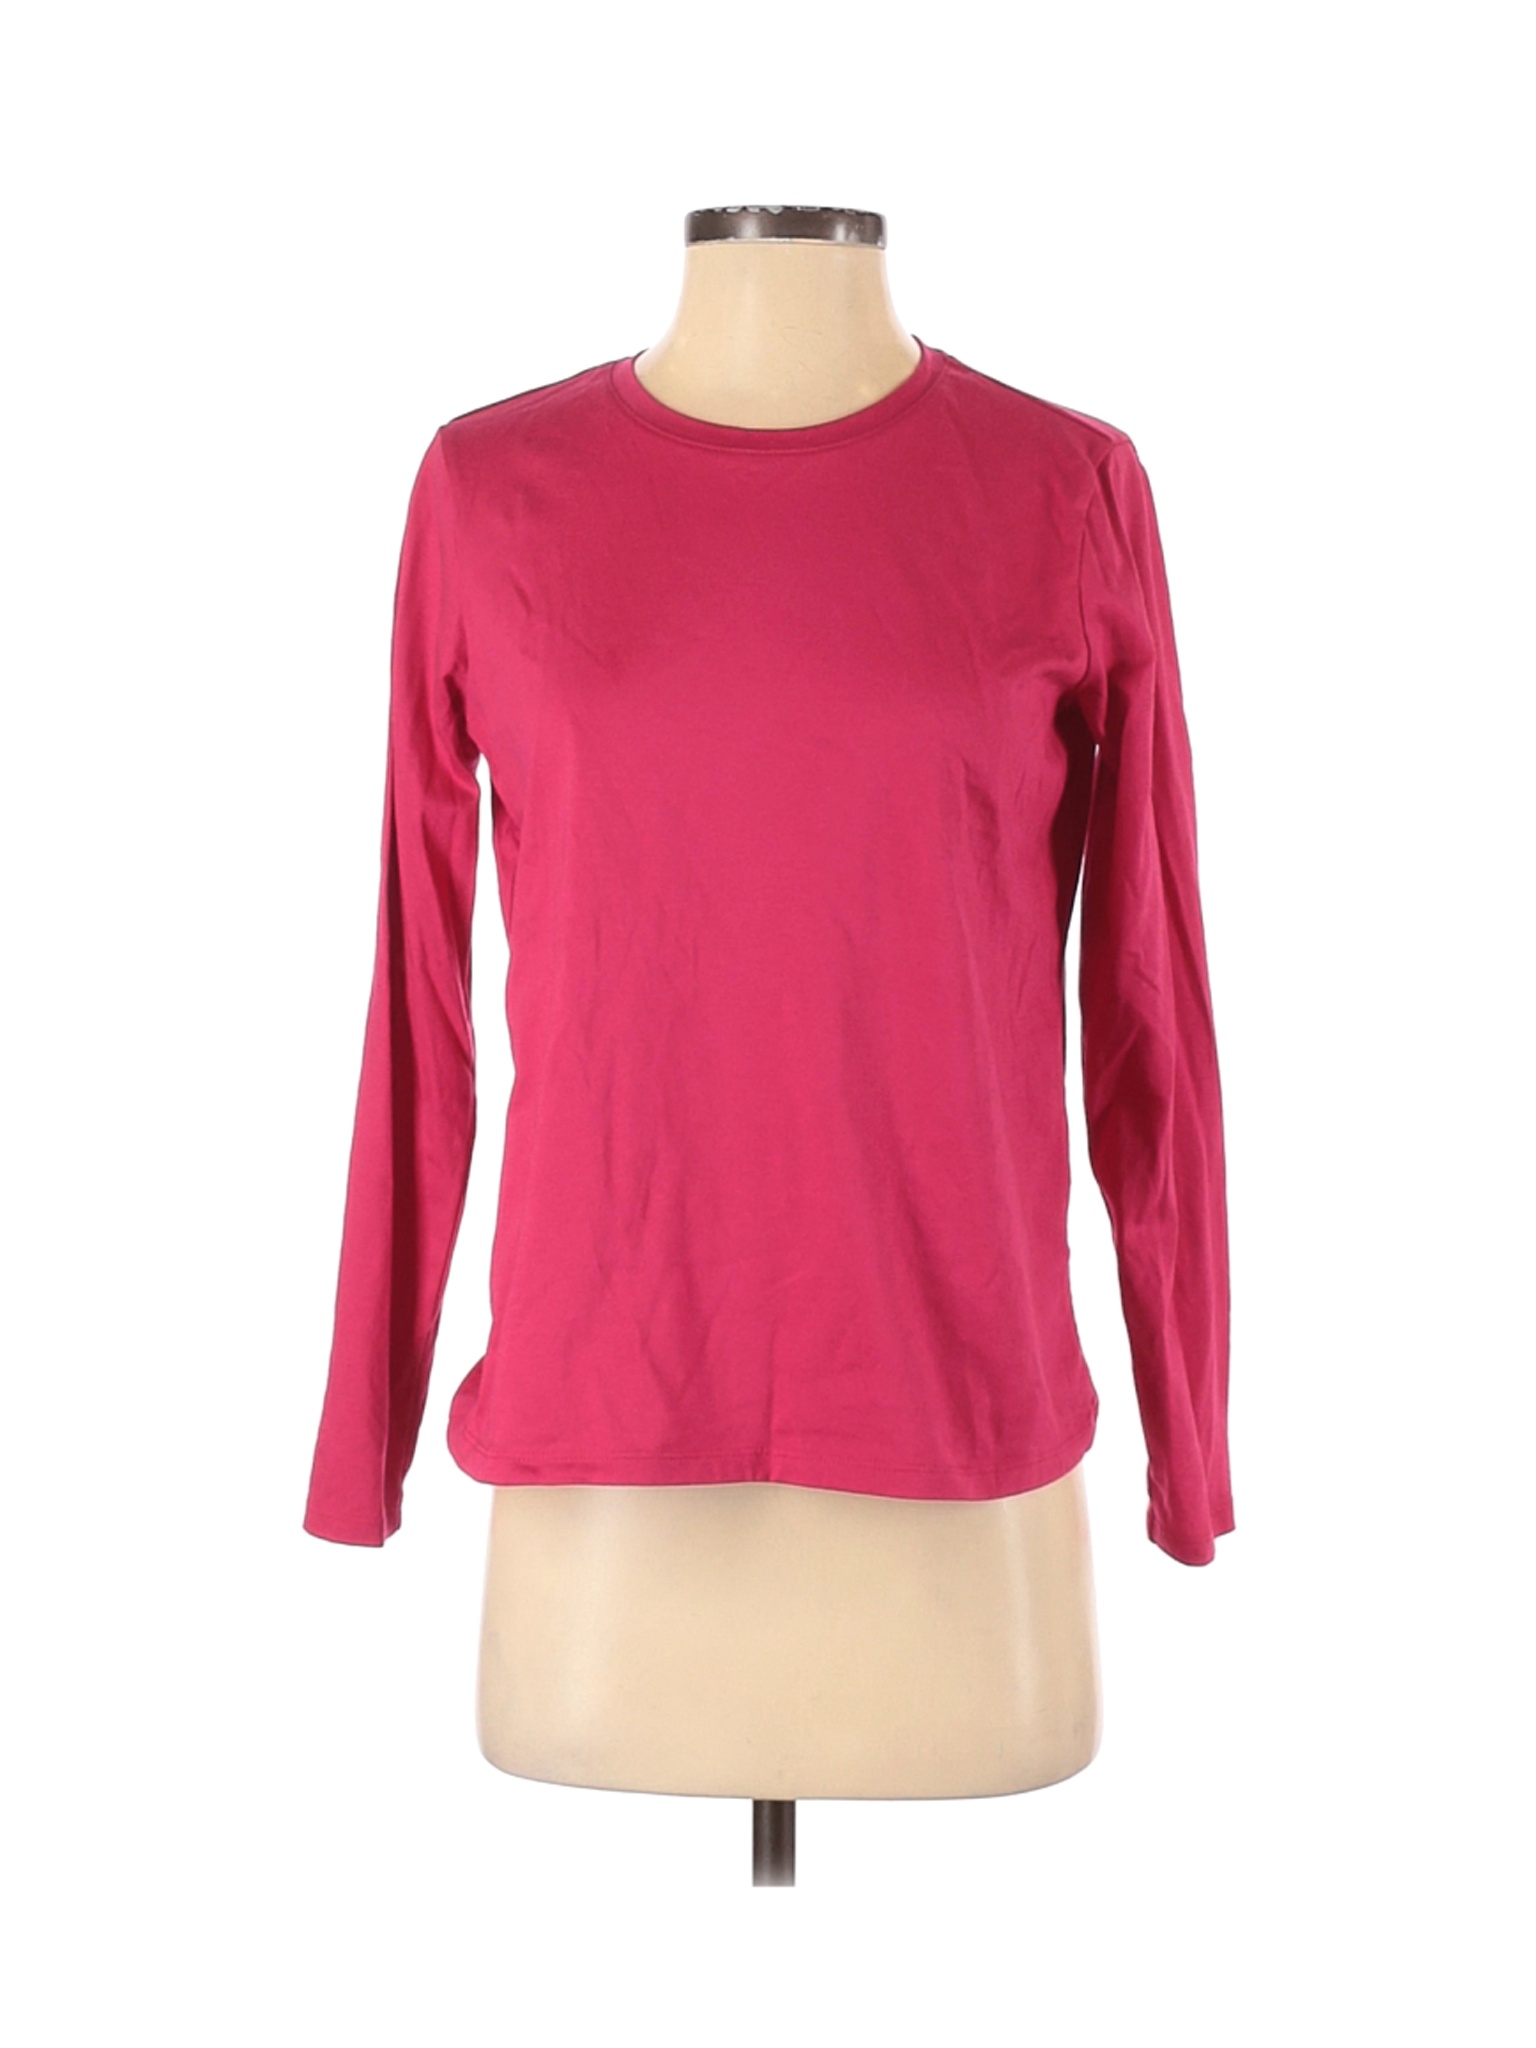 Lands' End Women Pink Long Sleeve T-Shirt XS | eBay